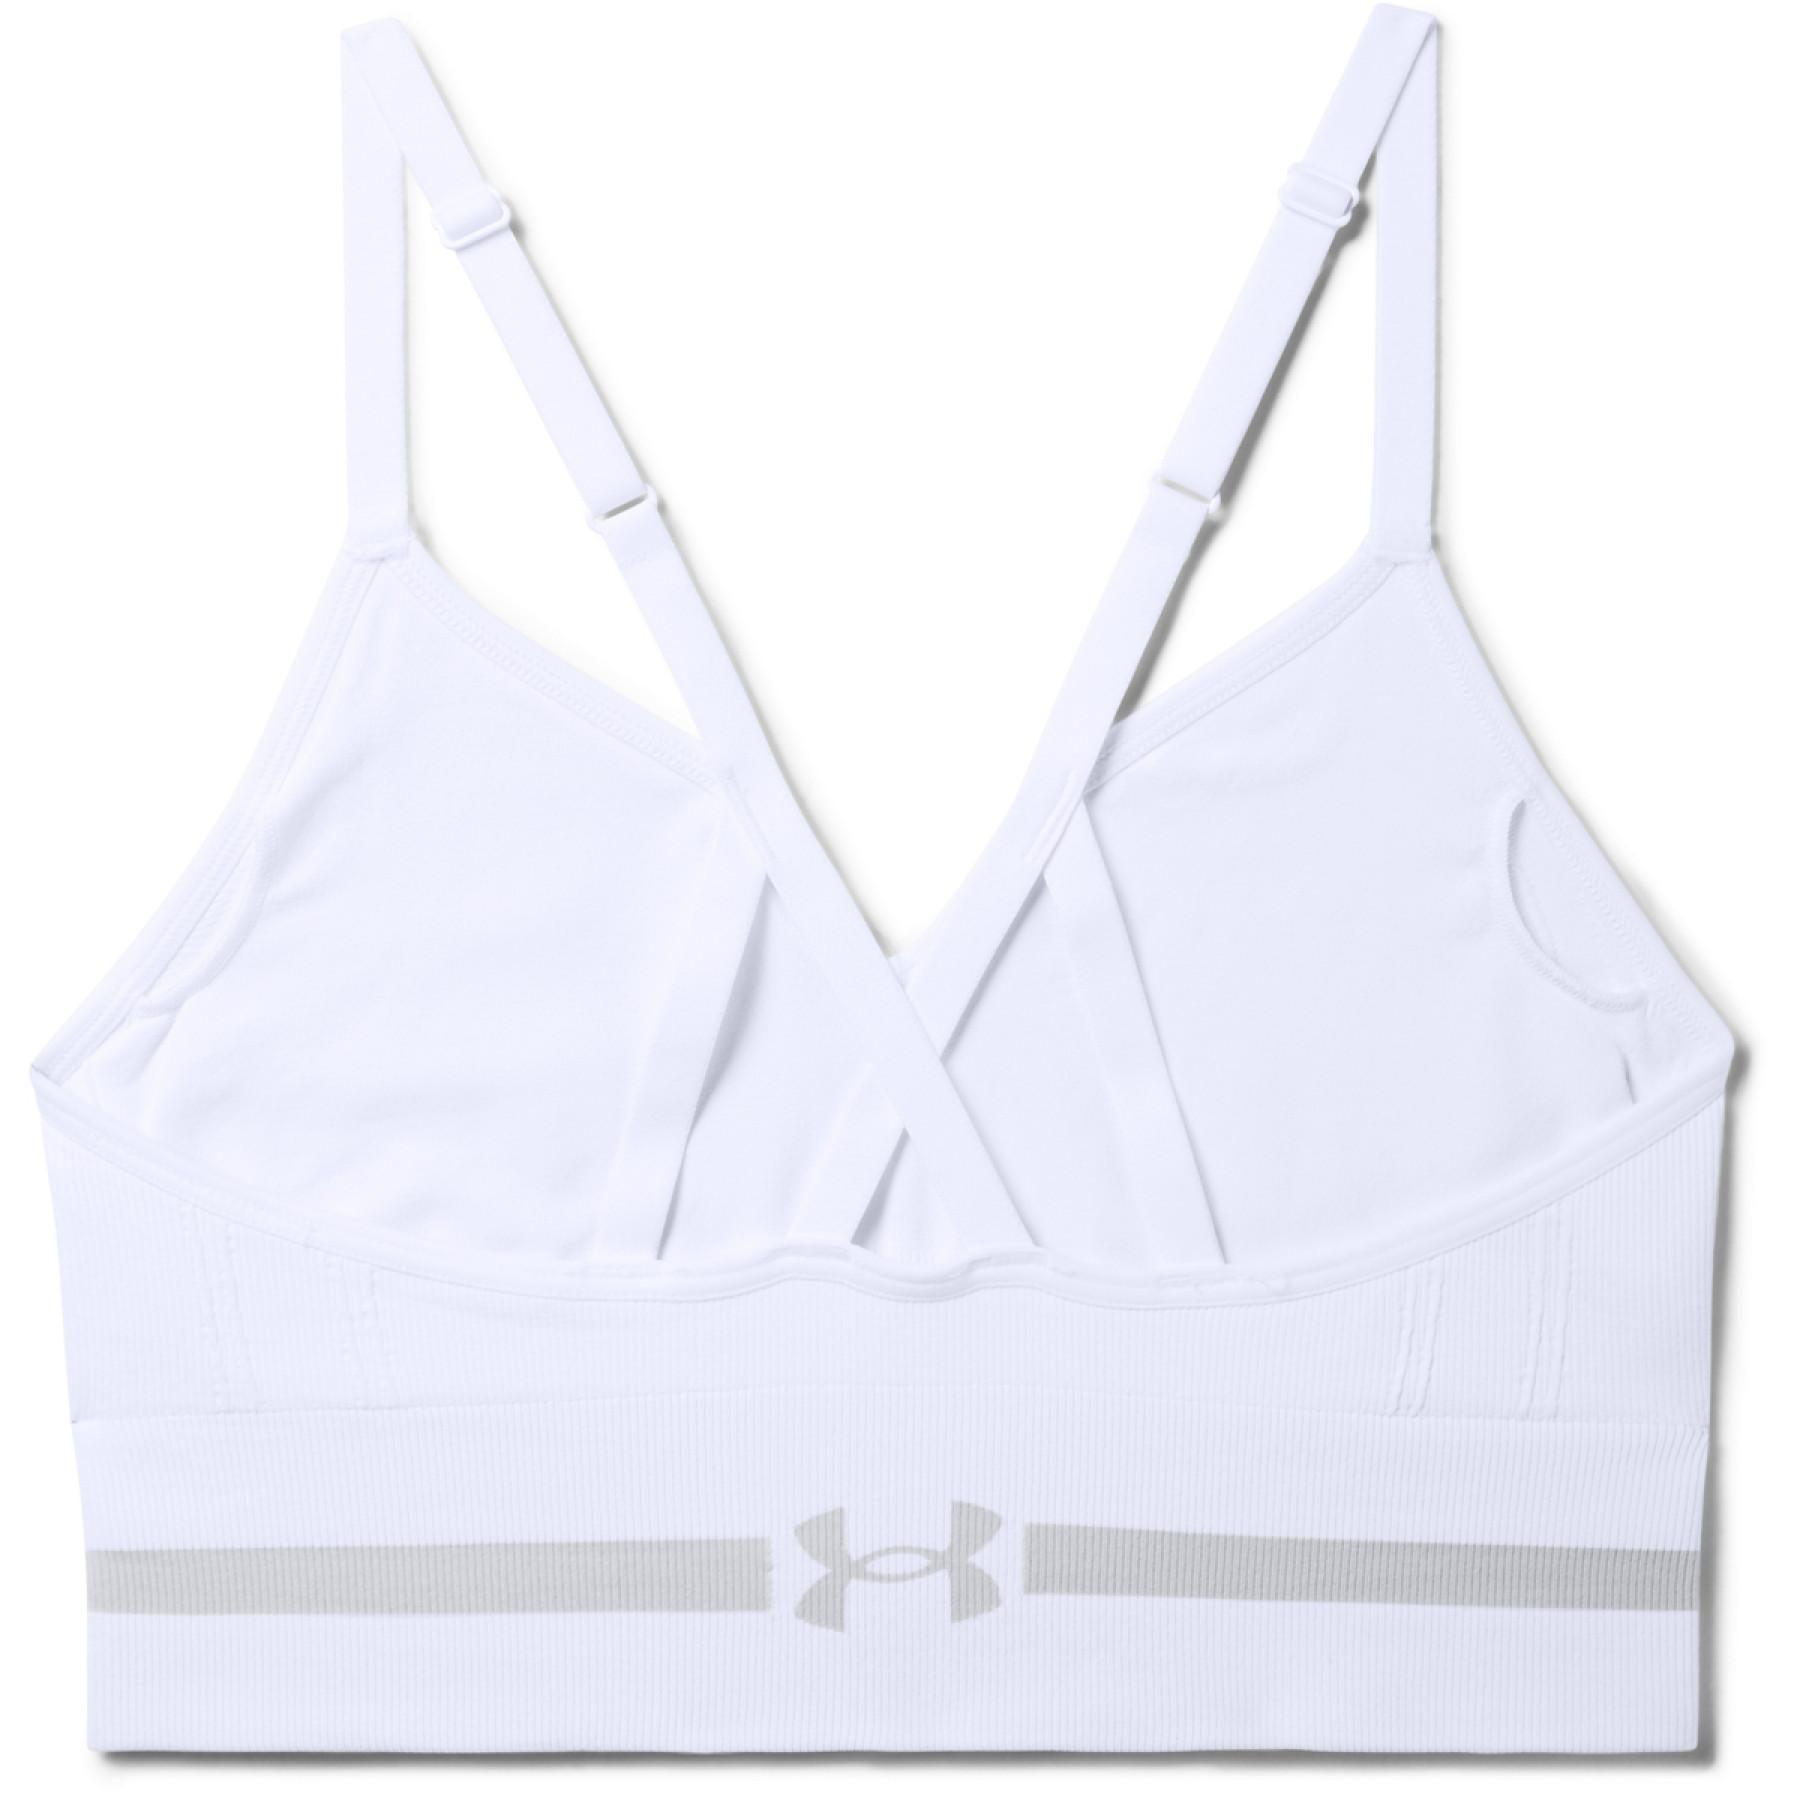 Women's bra Under Armour de sport Seamless Low Long